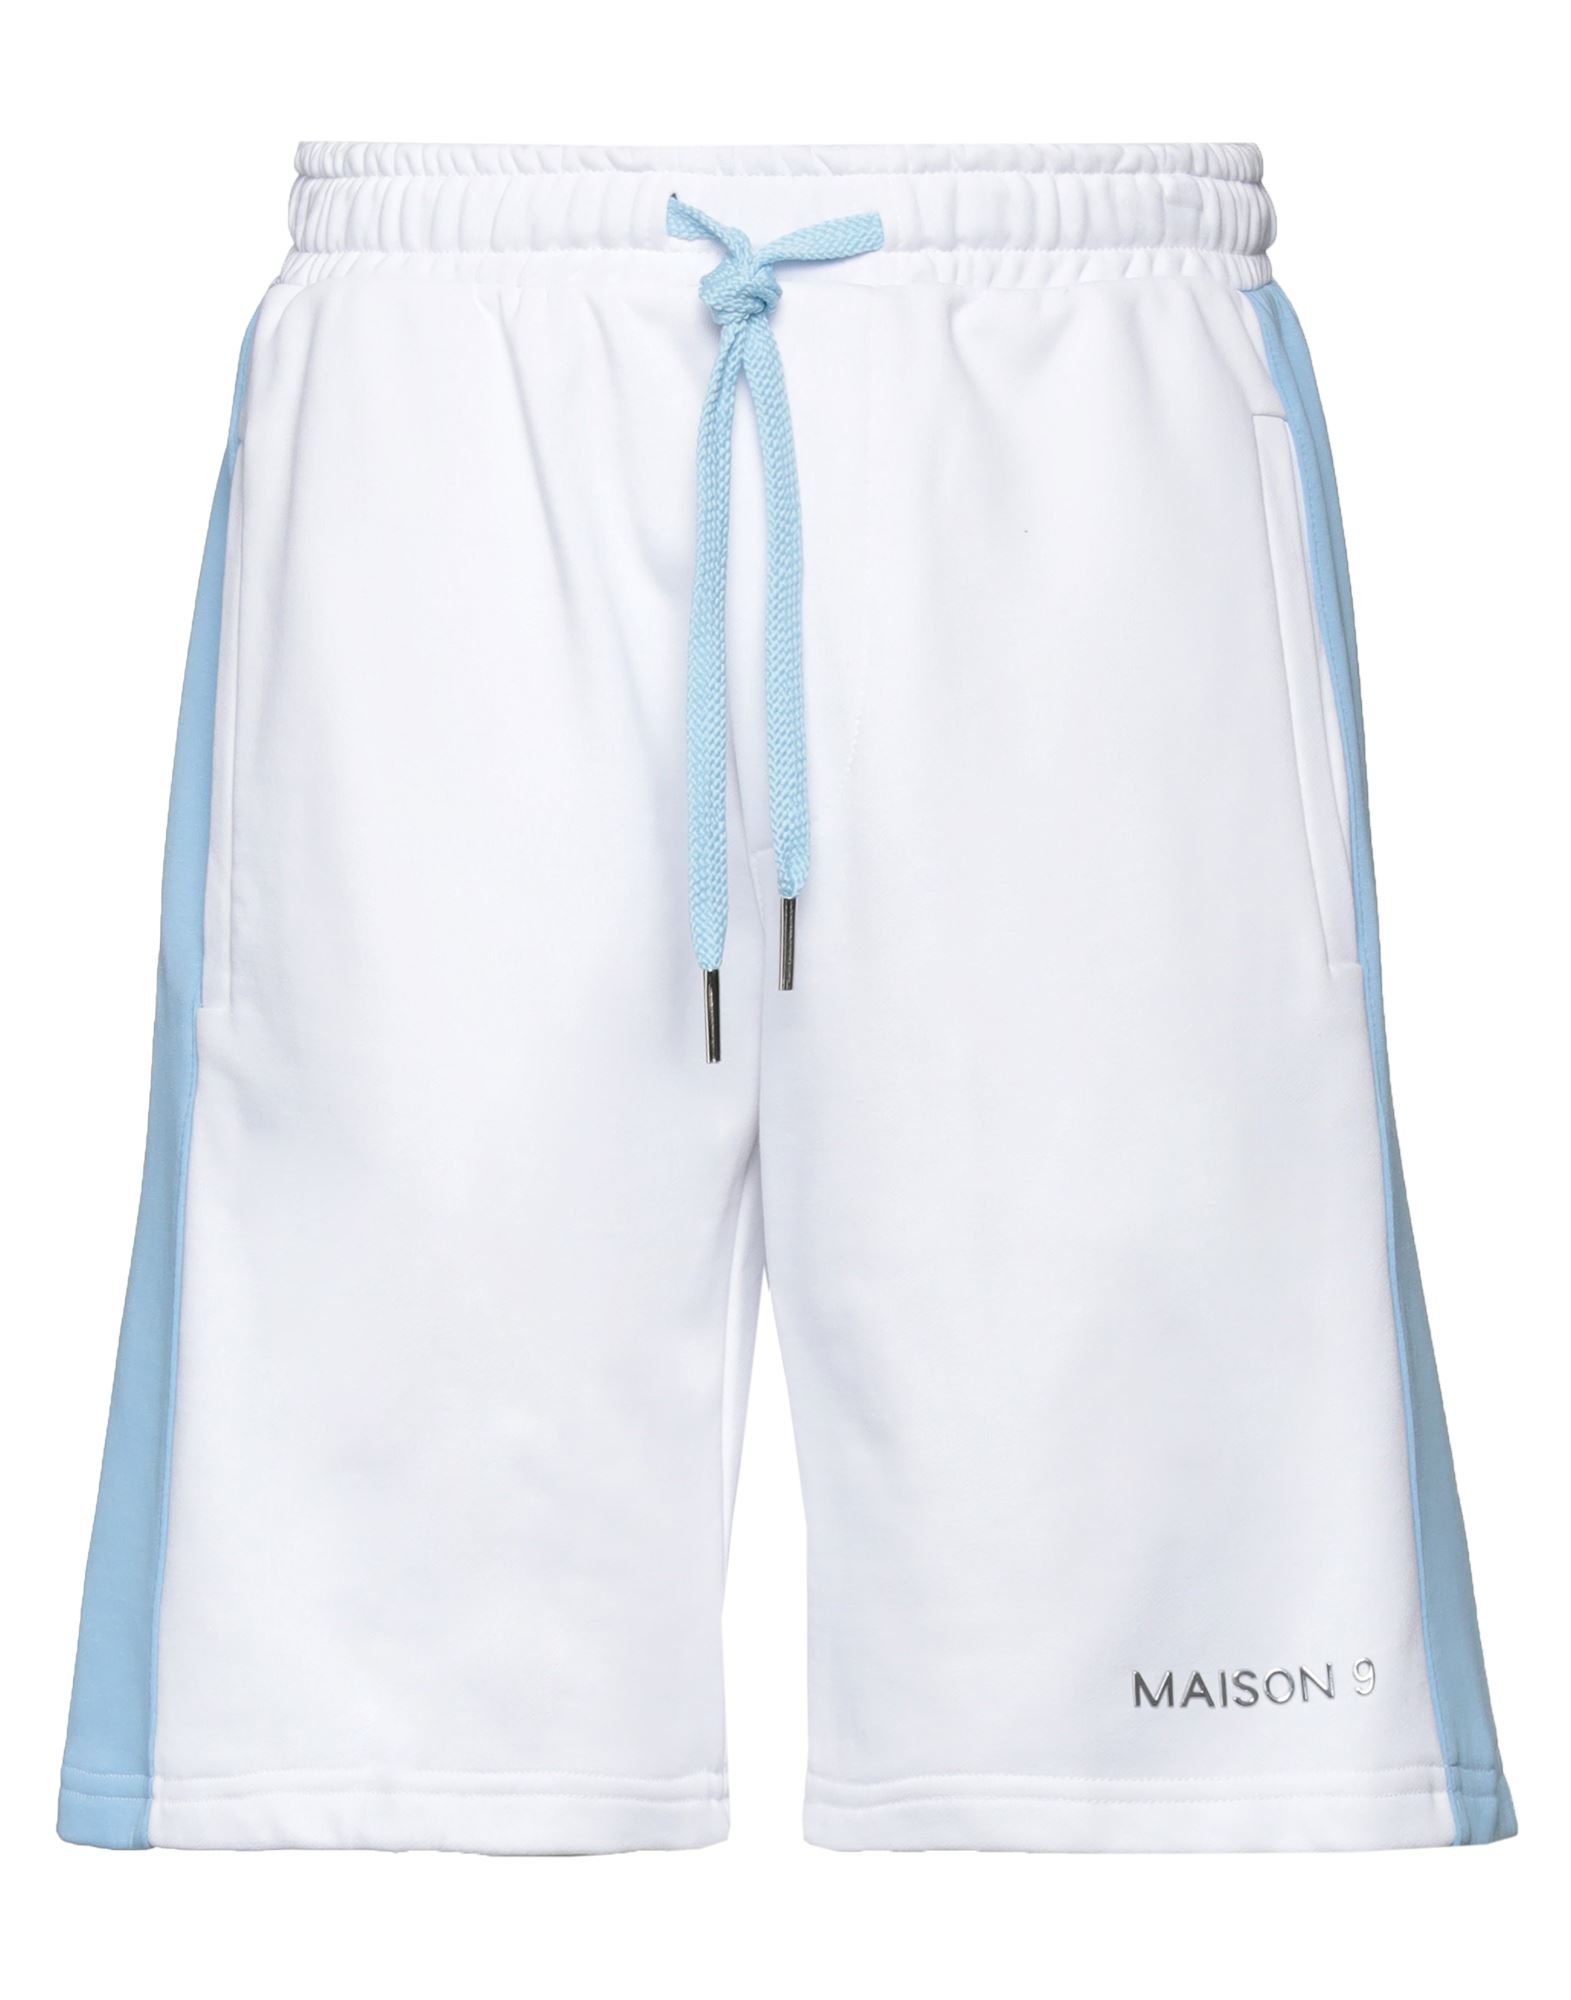 MAISON 9 Paris Shorts & Bermuda Shorts